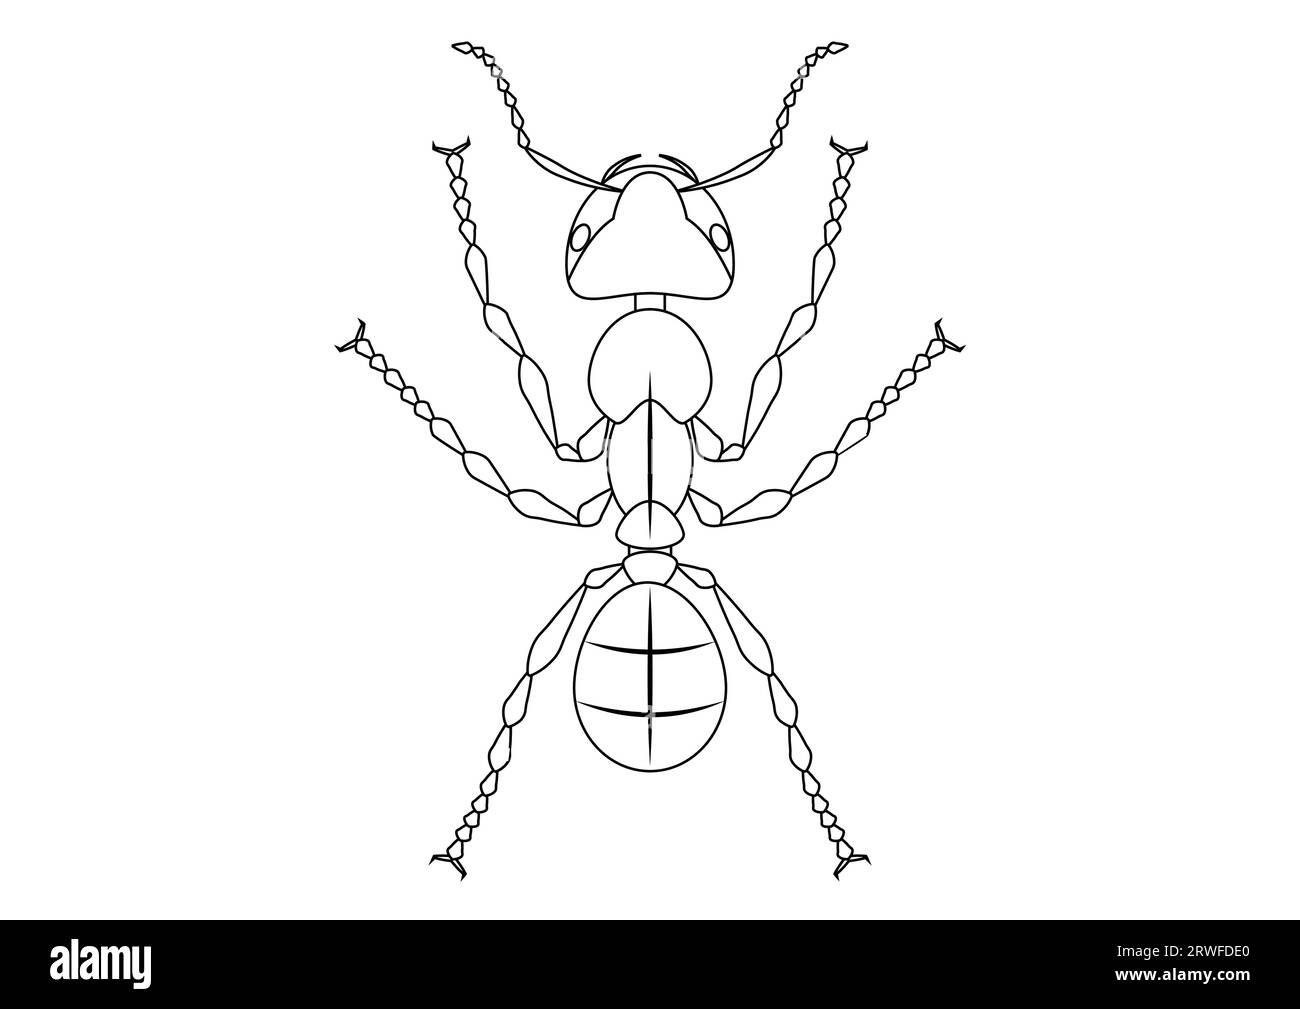 Schwarz-weiß-Ant Clipart. Malseite von Ant Stock Vektor